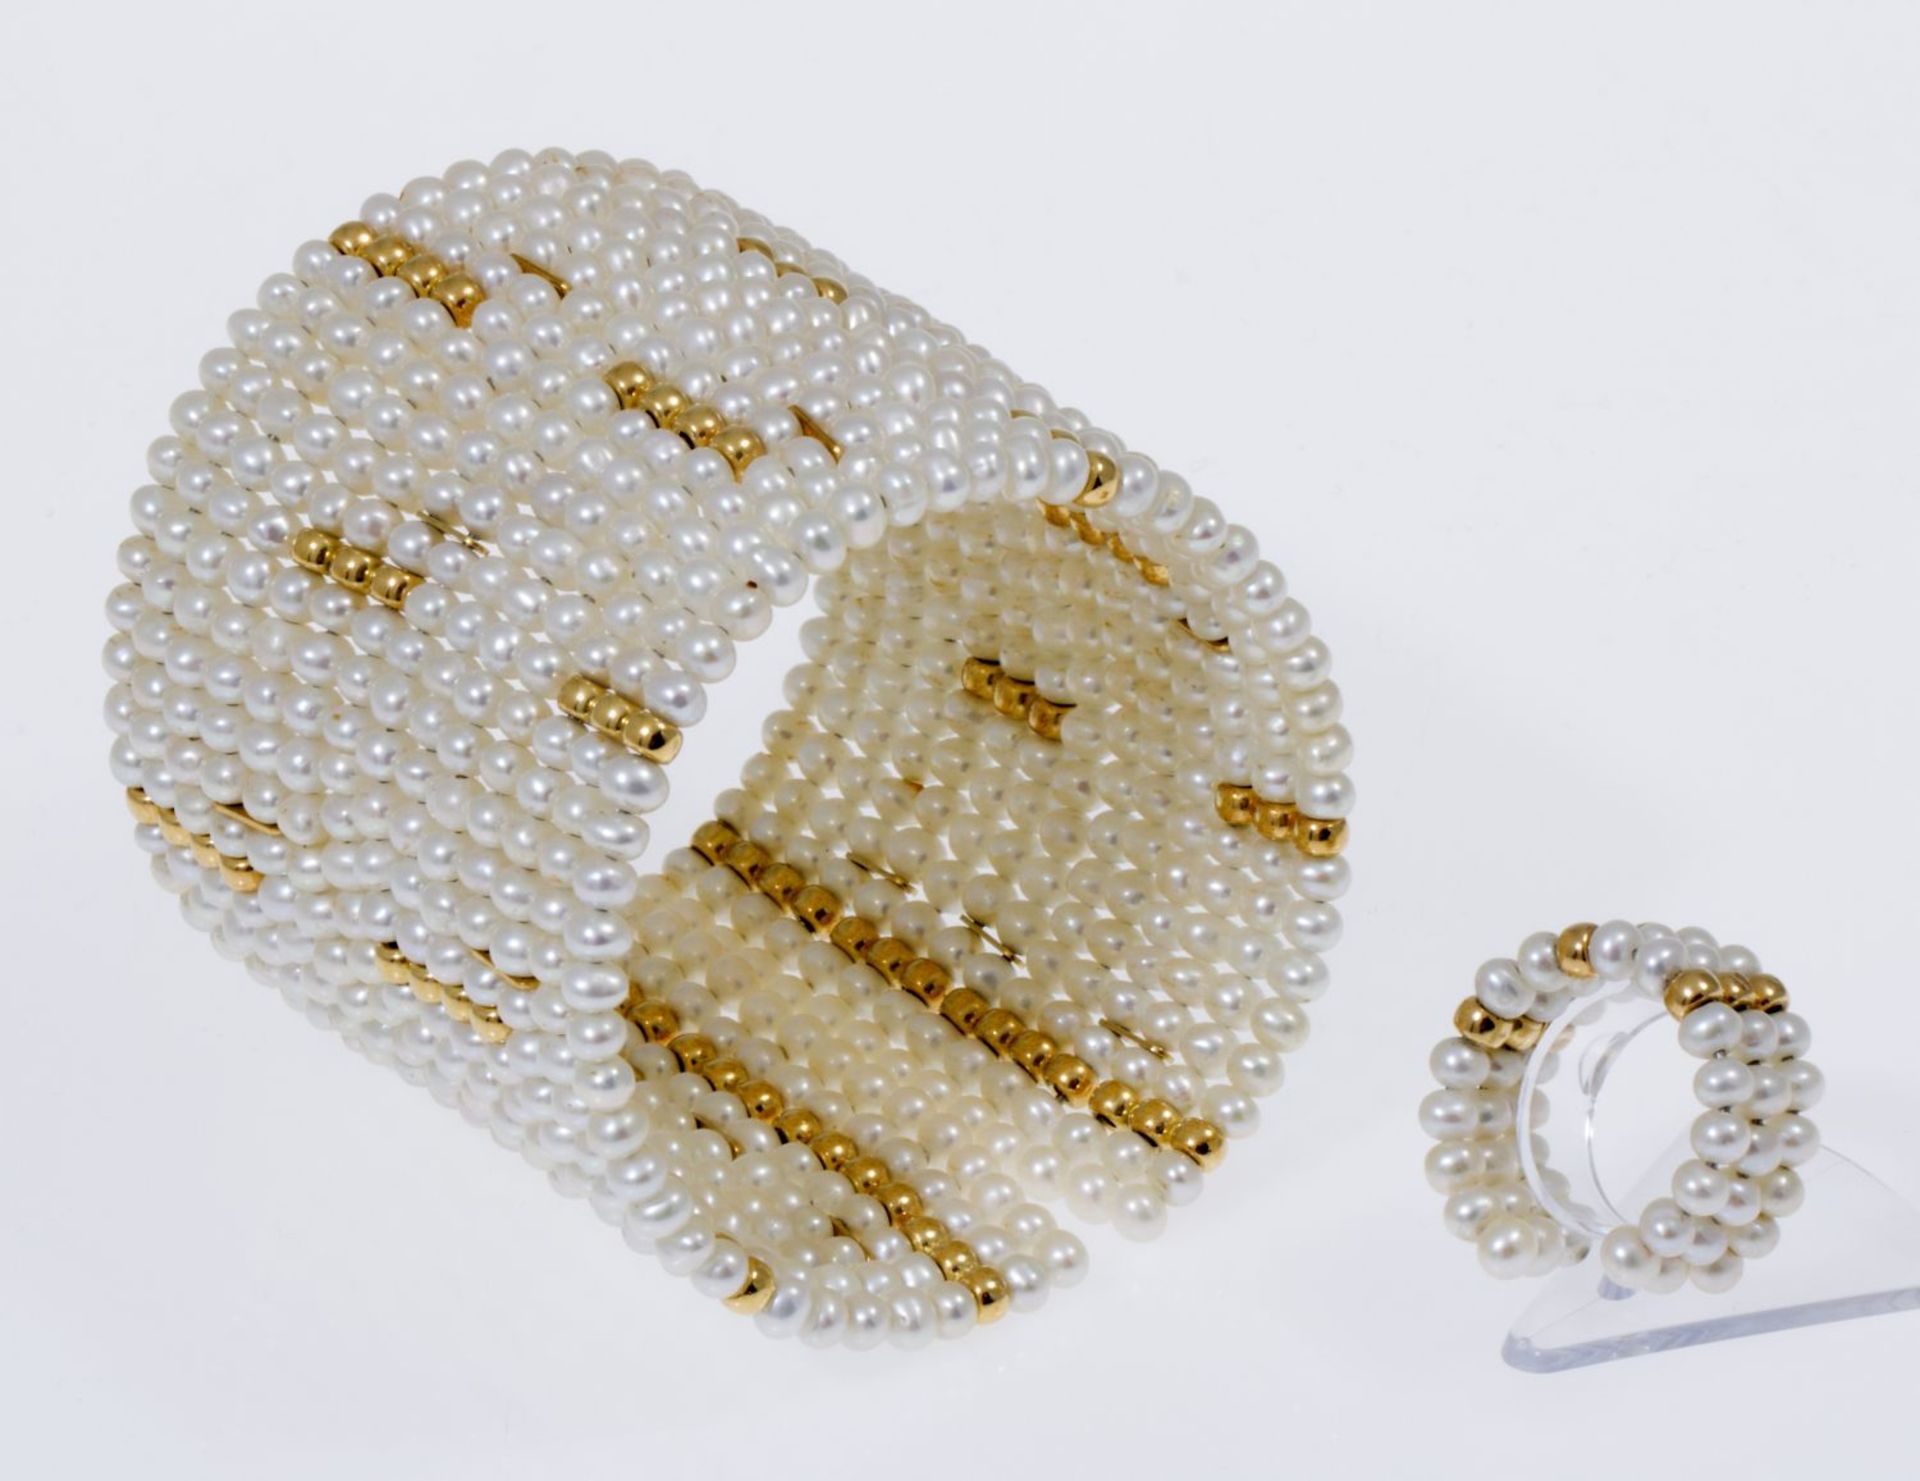 Breite Perlenarmspange in Manschettenform und passender SpangenringZahlreiche kleine cremefarbene